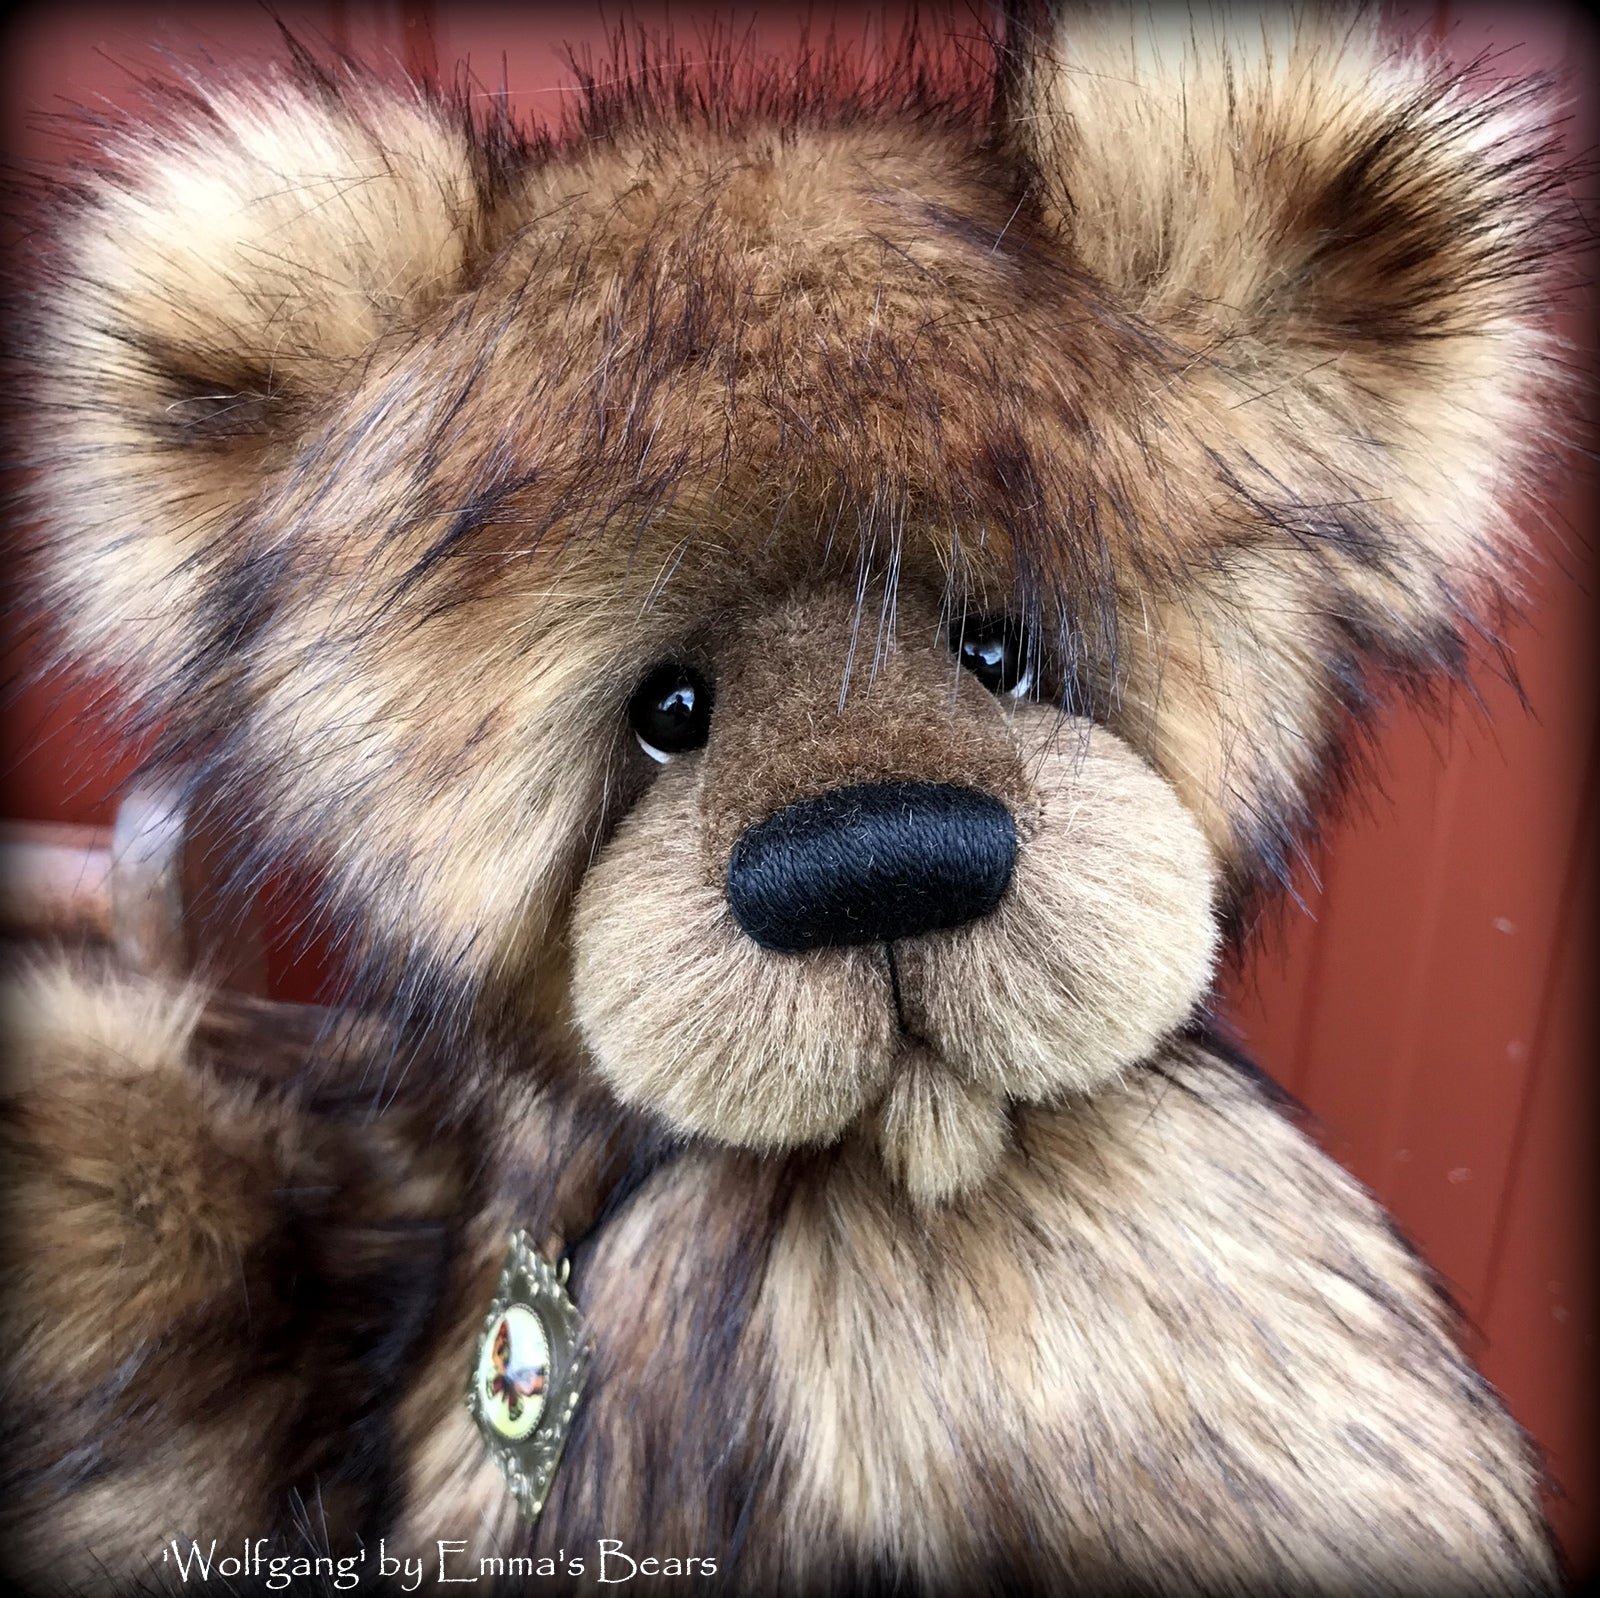 Wolfgang - 15" Faux Fur Artist Bear by Emmas Bears - OOAK